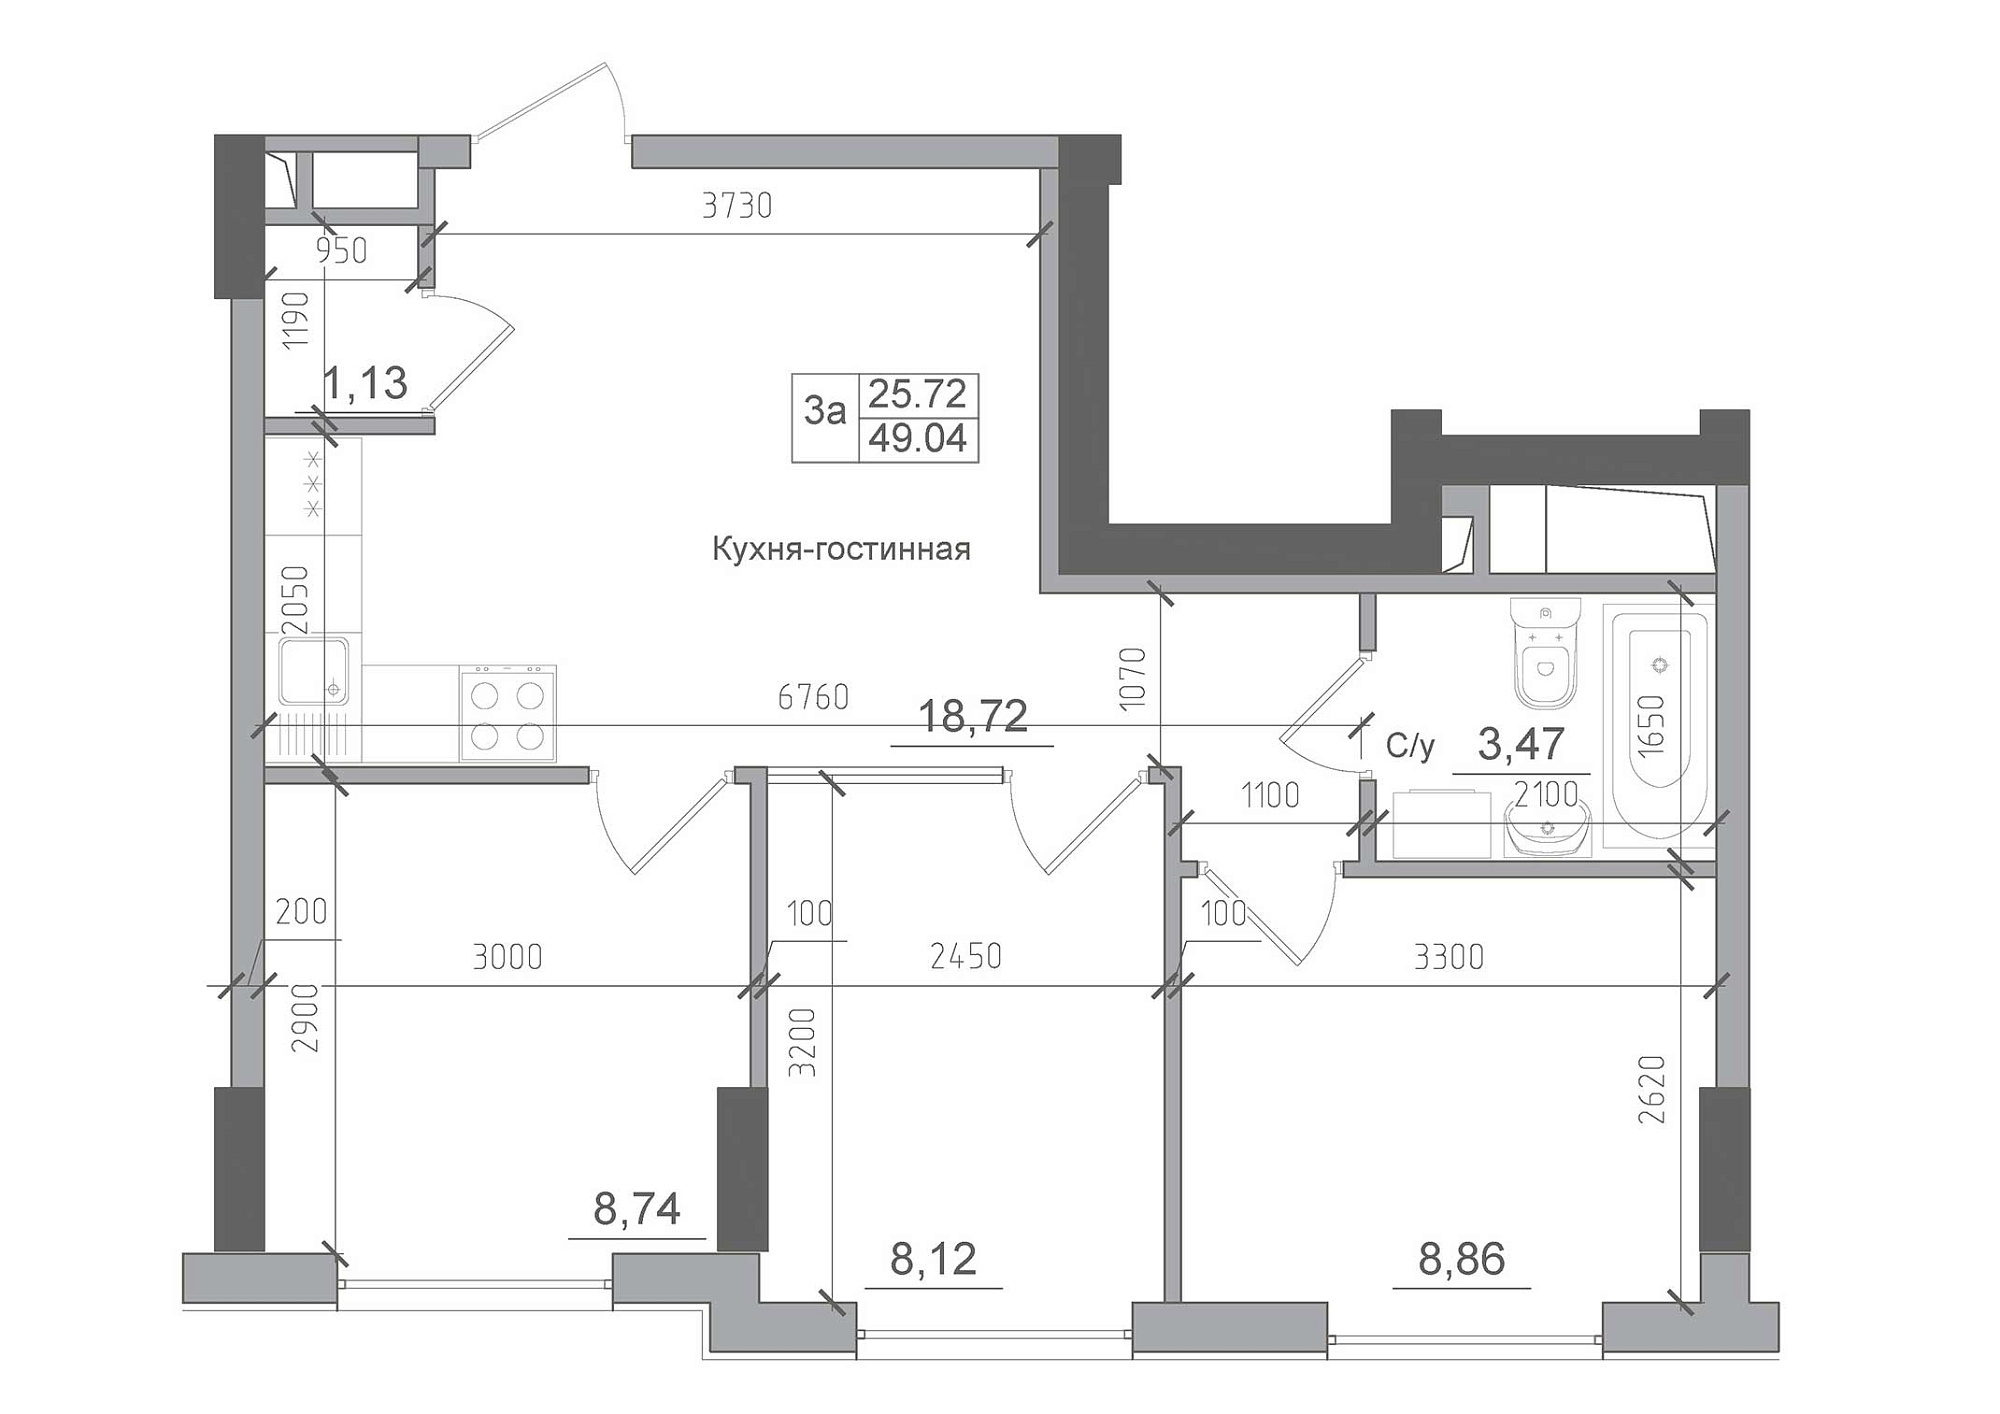 Планування 3-к квартира площею 49.04м2, AB-22-09/00007.